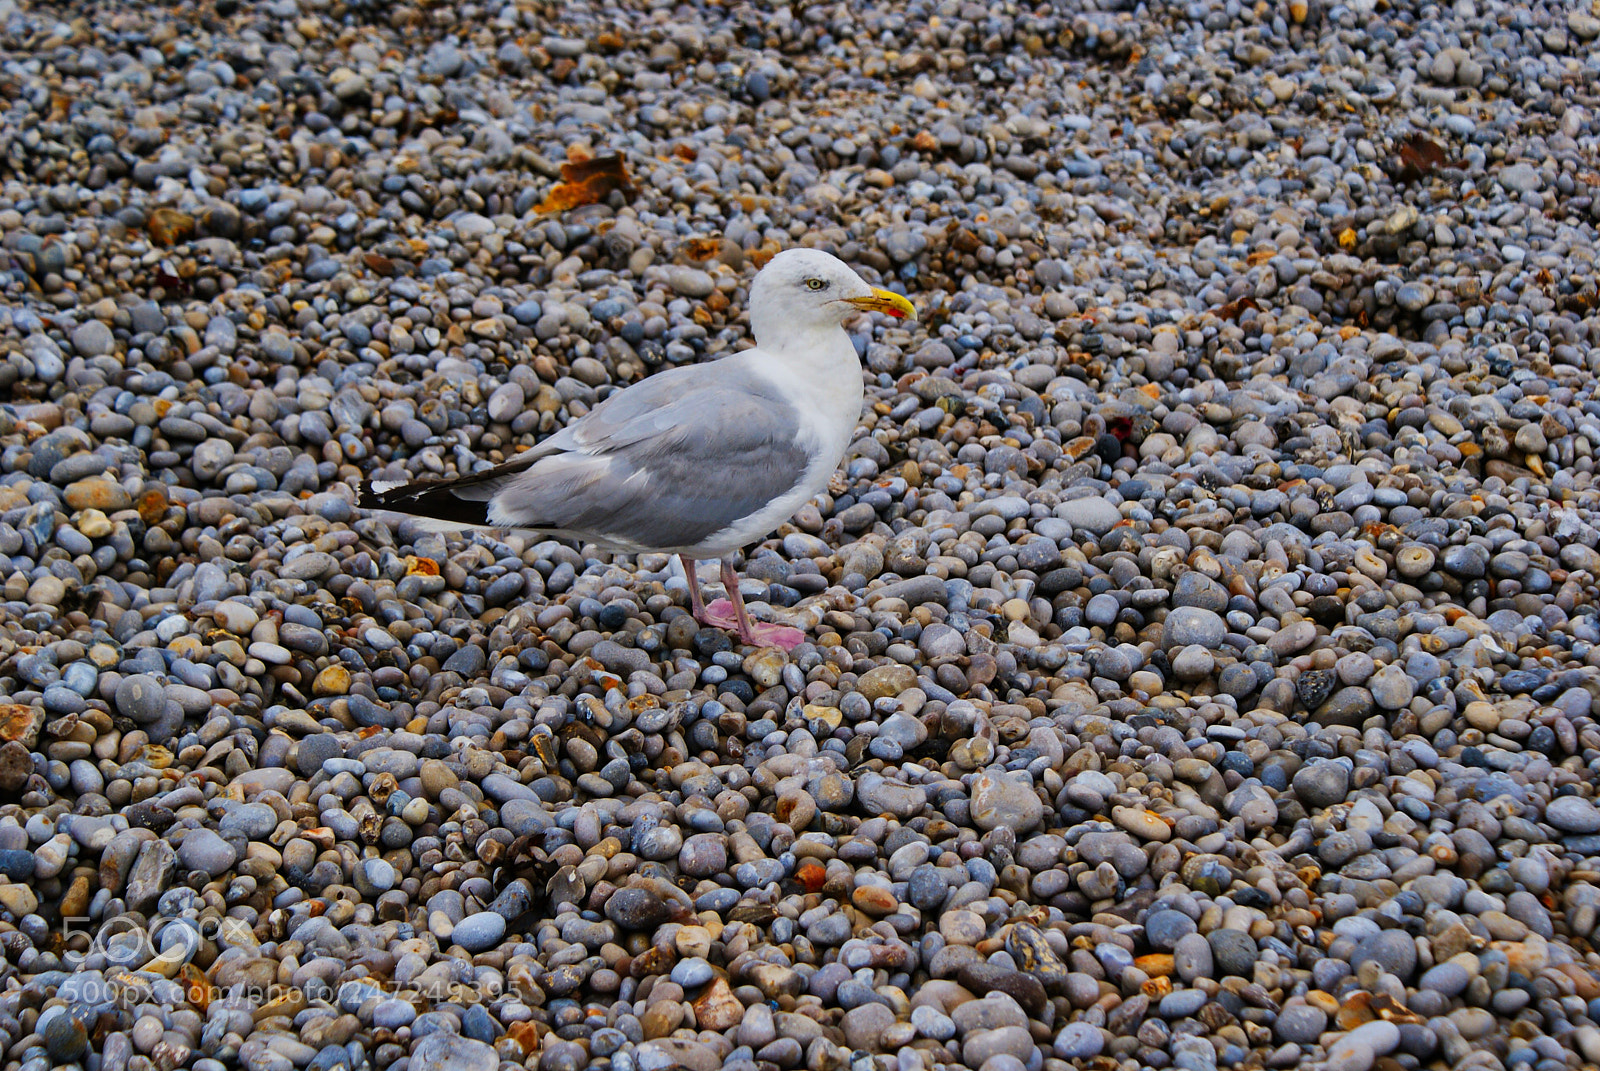 Sony Alpha DSLR-A200 sample photo. Bird on beach photography